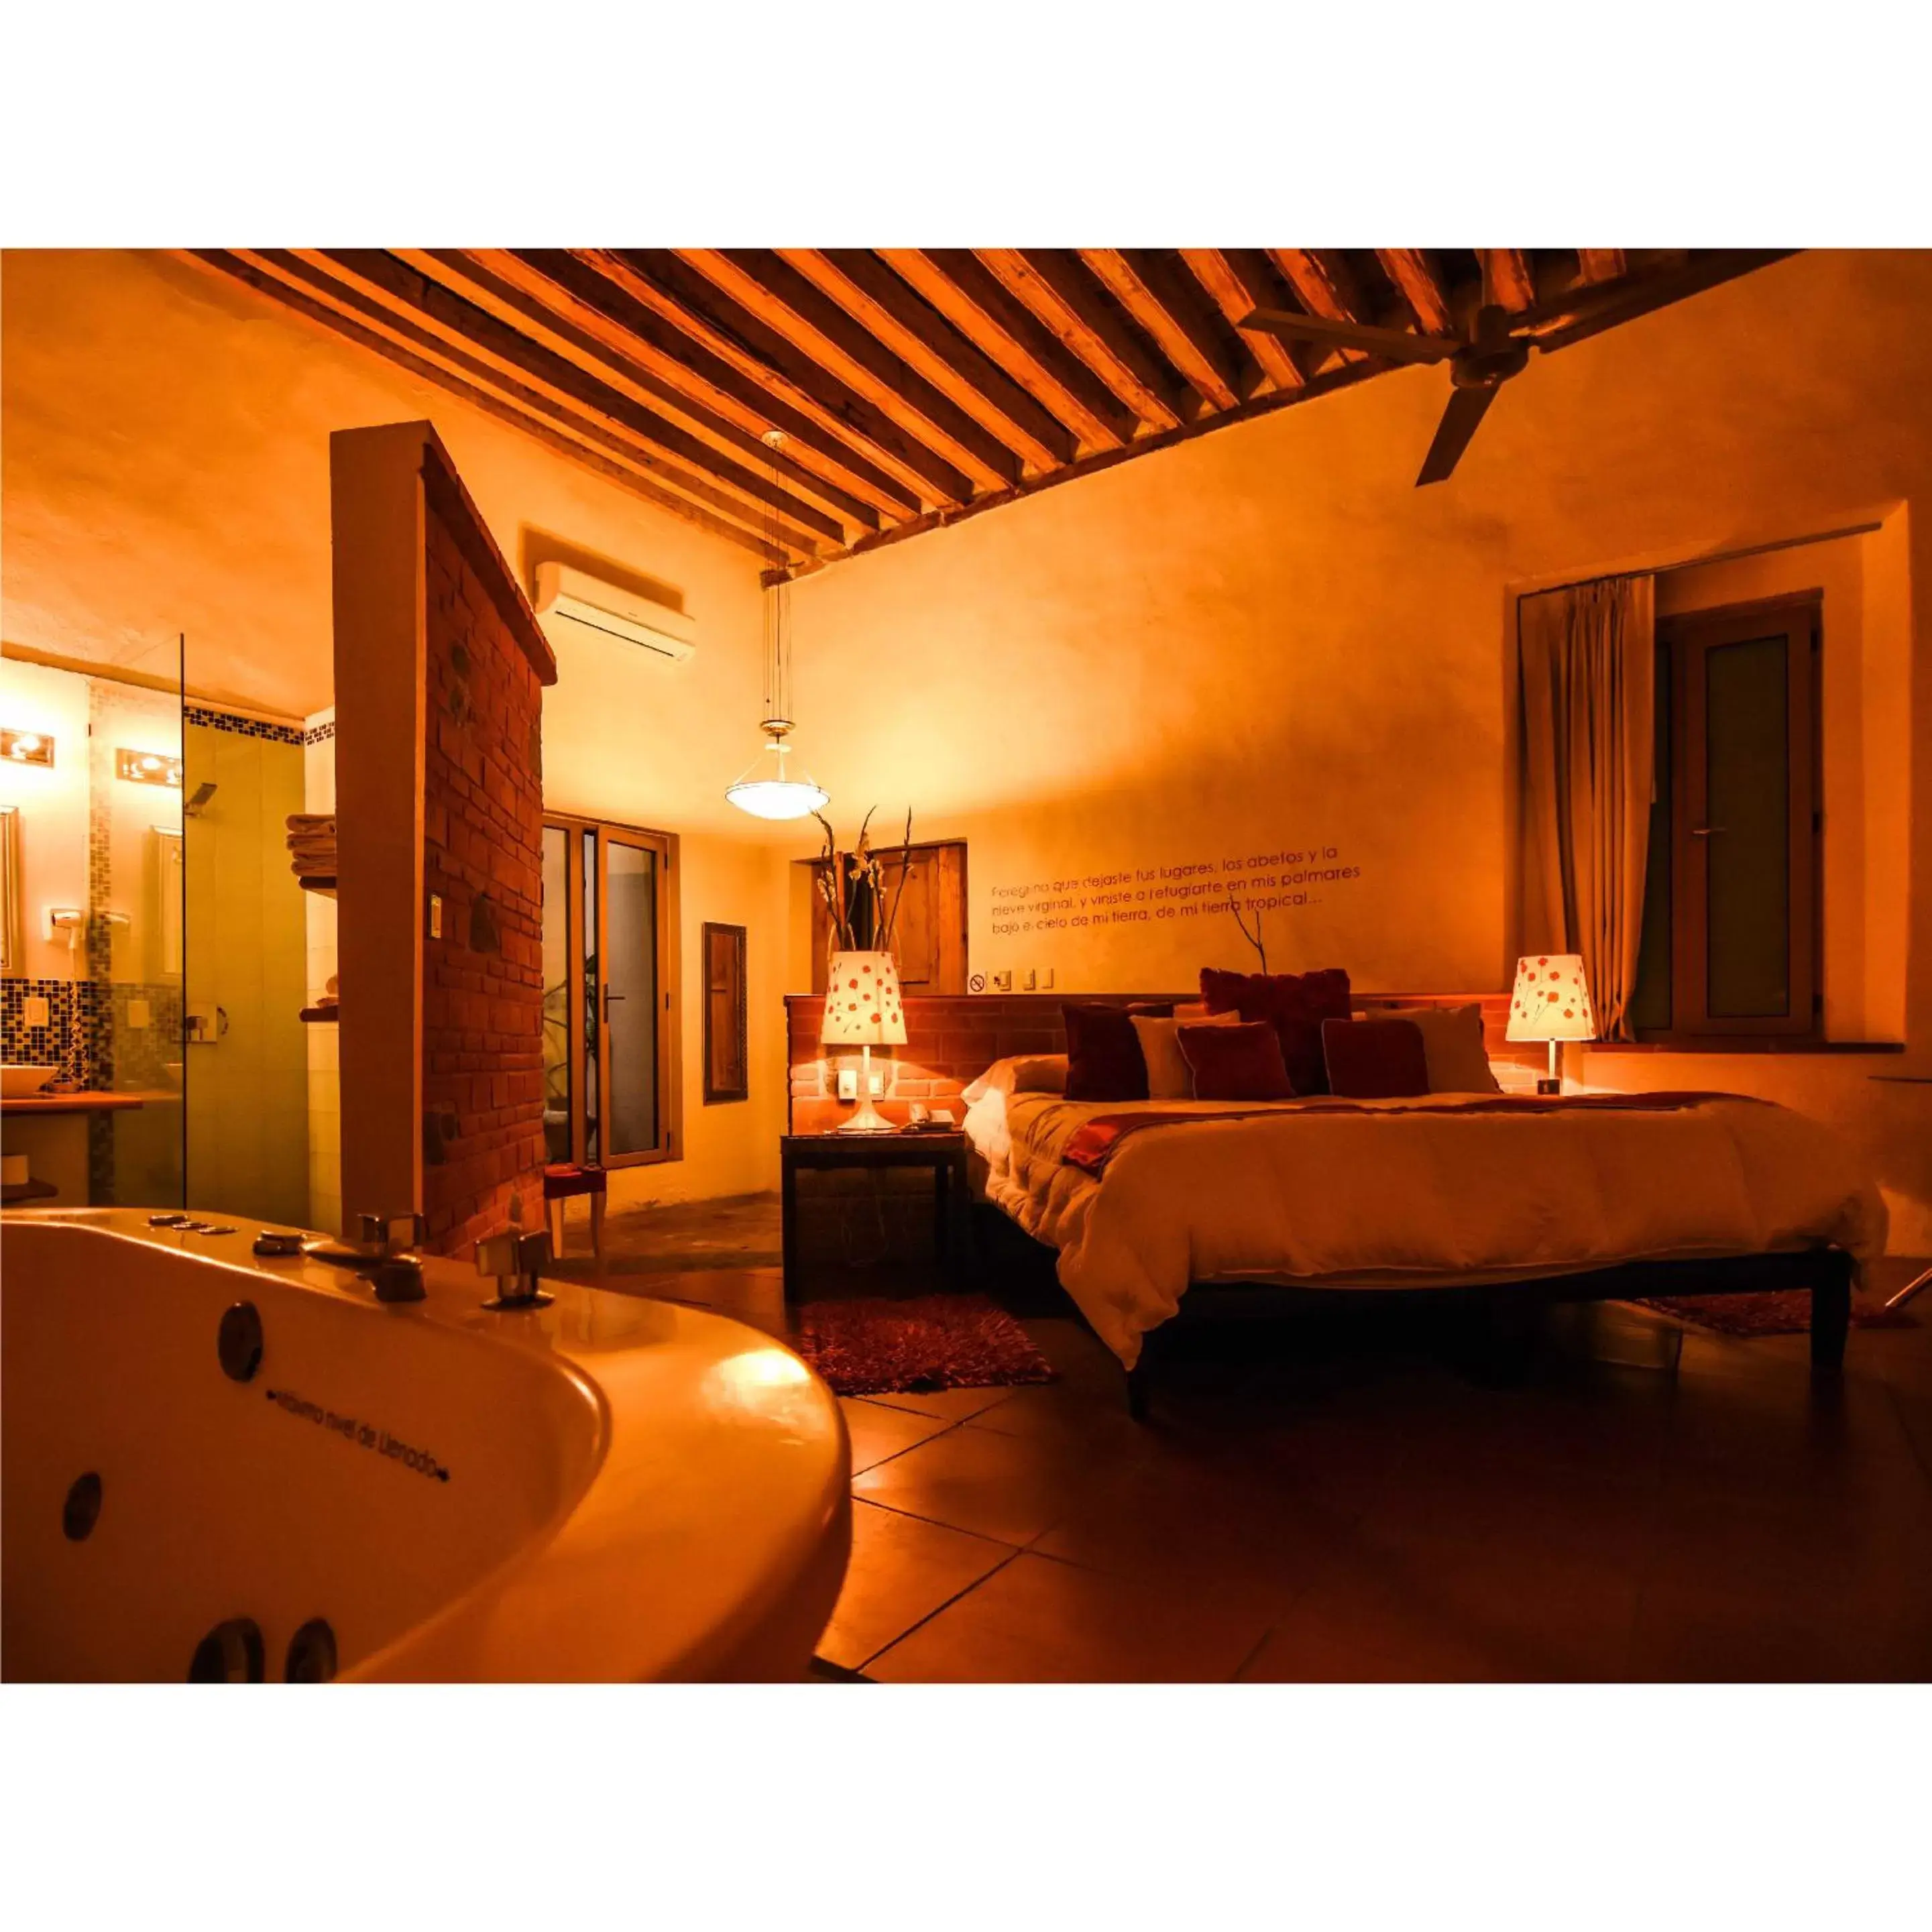 Photo of the whole room, Bathroom in El Sueño Hotel & Spa